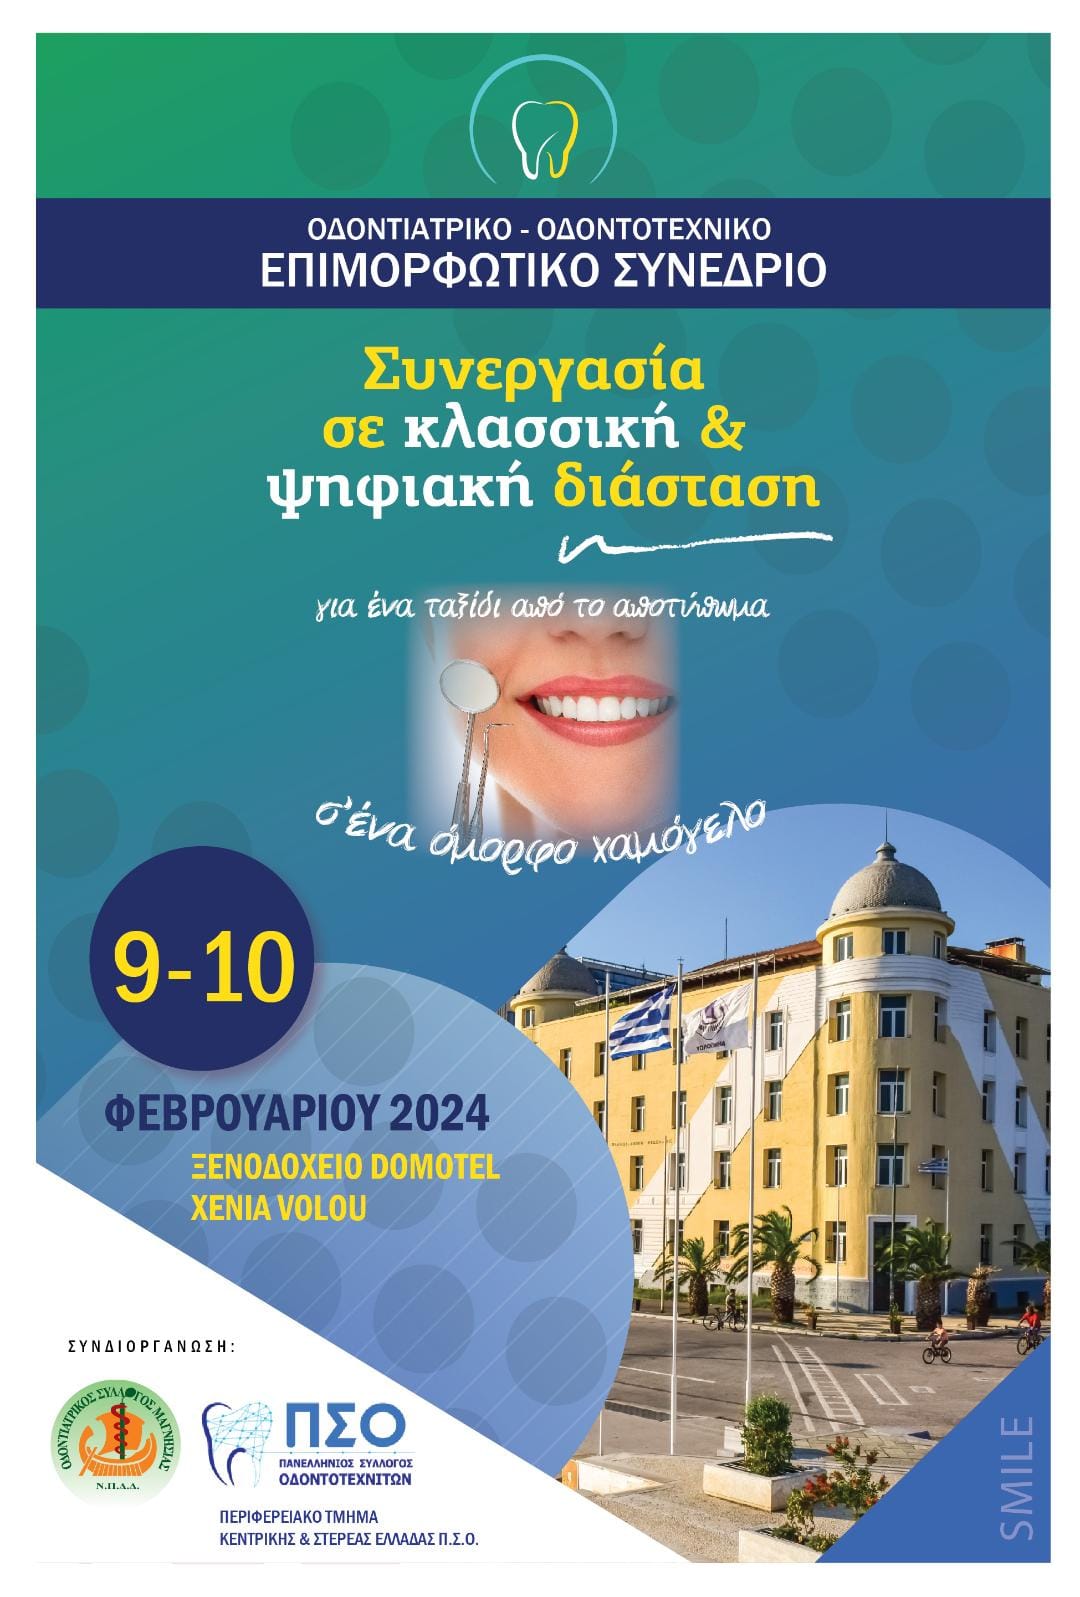 9-10/2/2024 Σας περιμένουμε στο Βόλο στο Επιμορφωτικό συνέδριο: Συνεργασία οδοντιάτρου - οδοντοτεχνίτη σε κλασσική και ψηφιακή διάσταση.